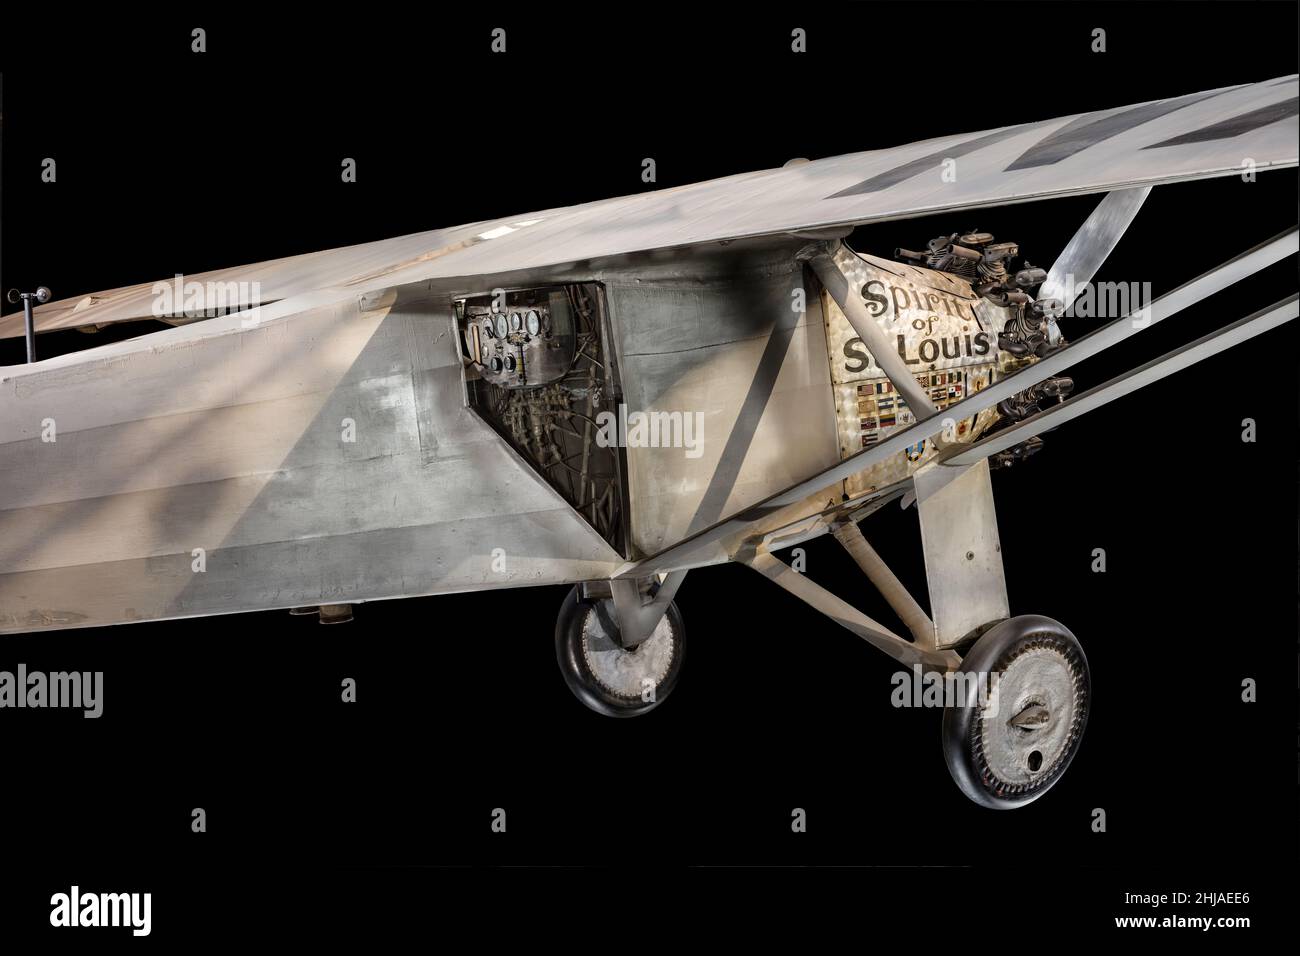 Dettaglio dell'aeroplano 'Spirit of St. Louis' volato da Charles Lindbergh attraverso l'Atlantico nel 1927, National Air and Space Museum, Washington, D.C., USA Foto Stock